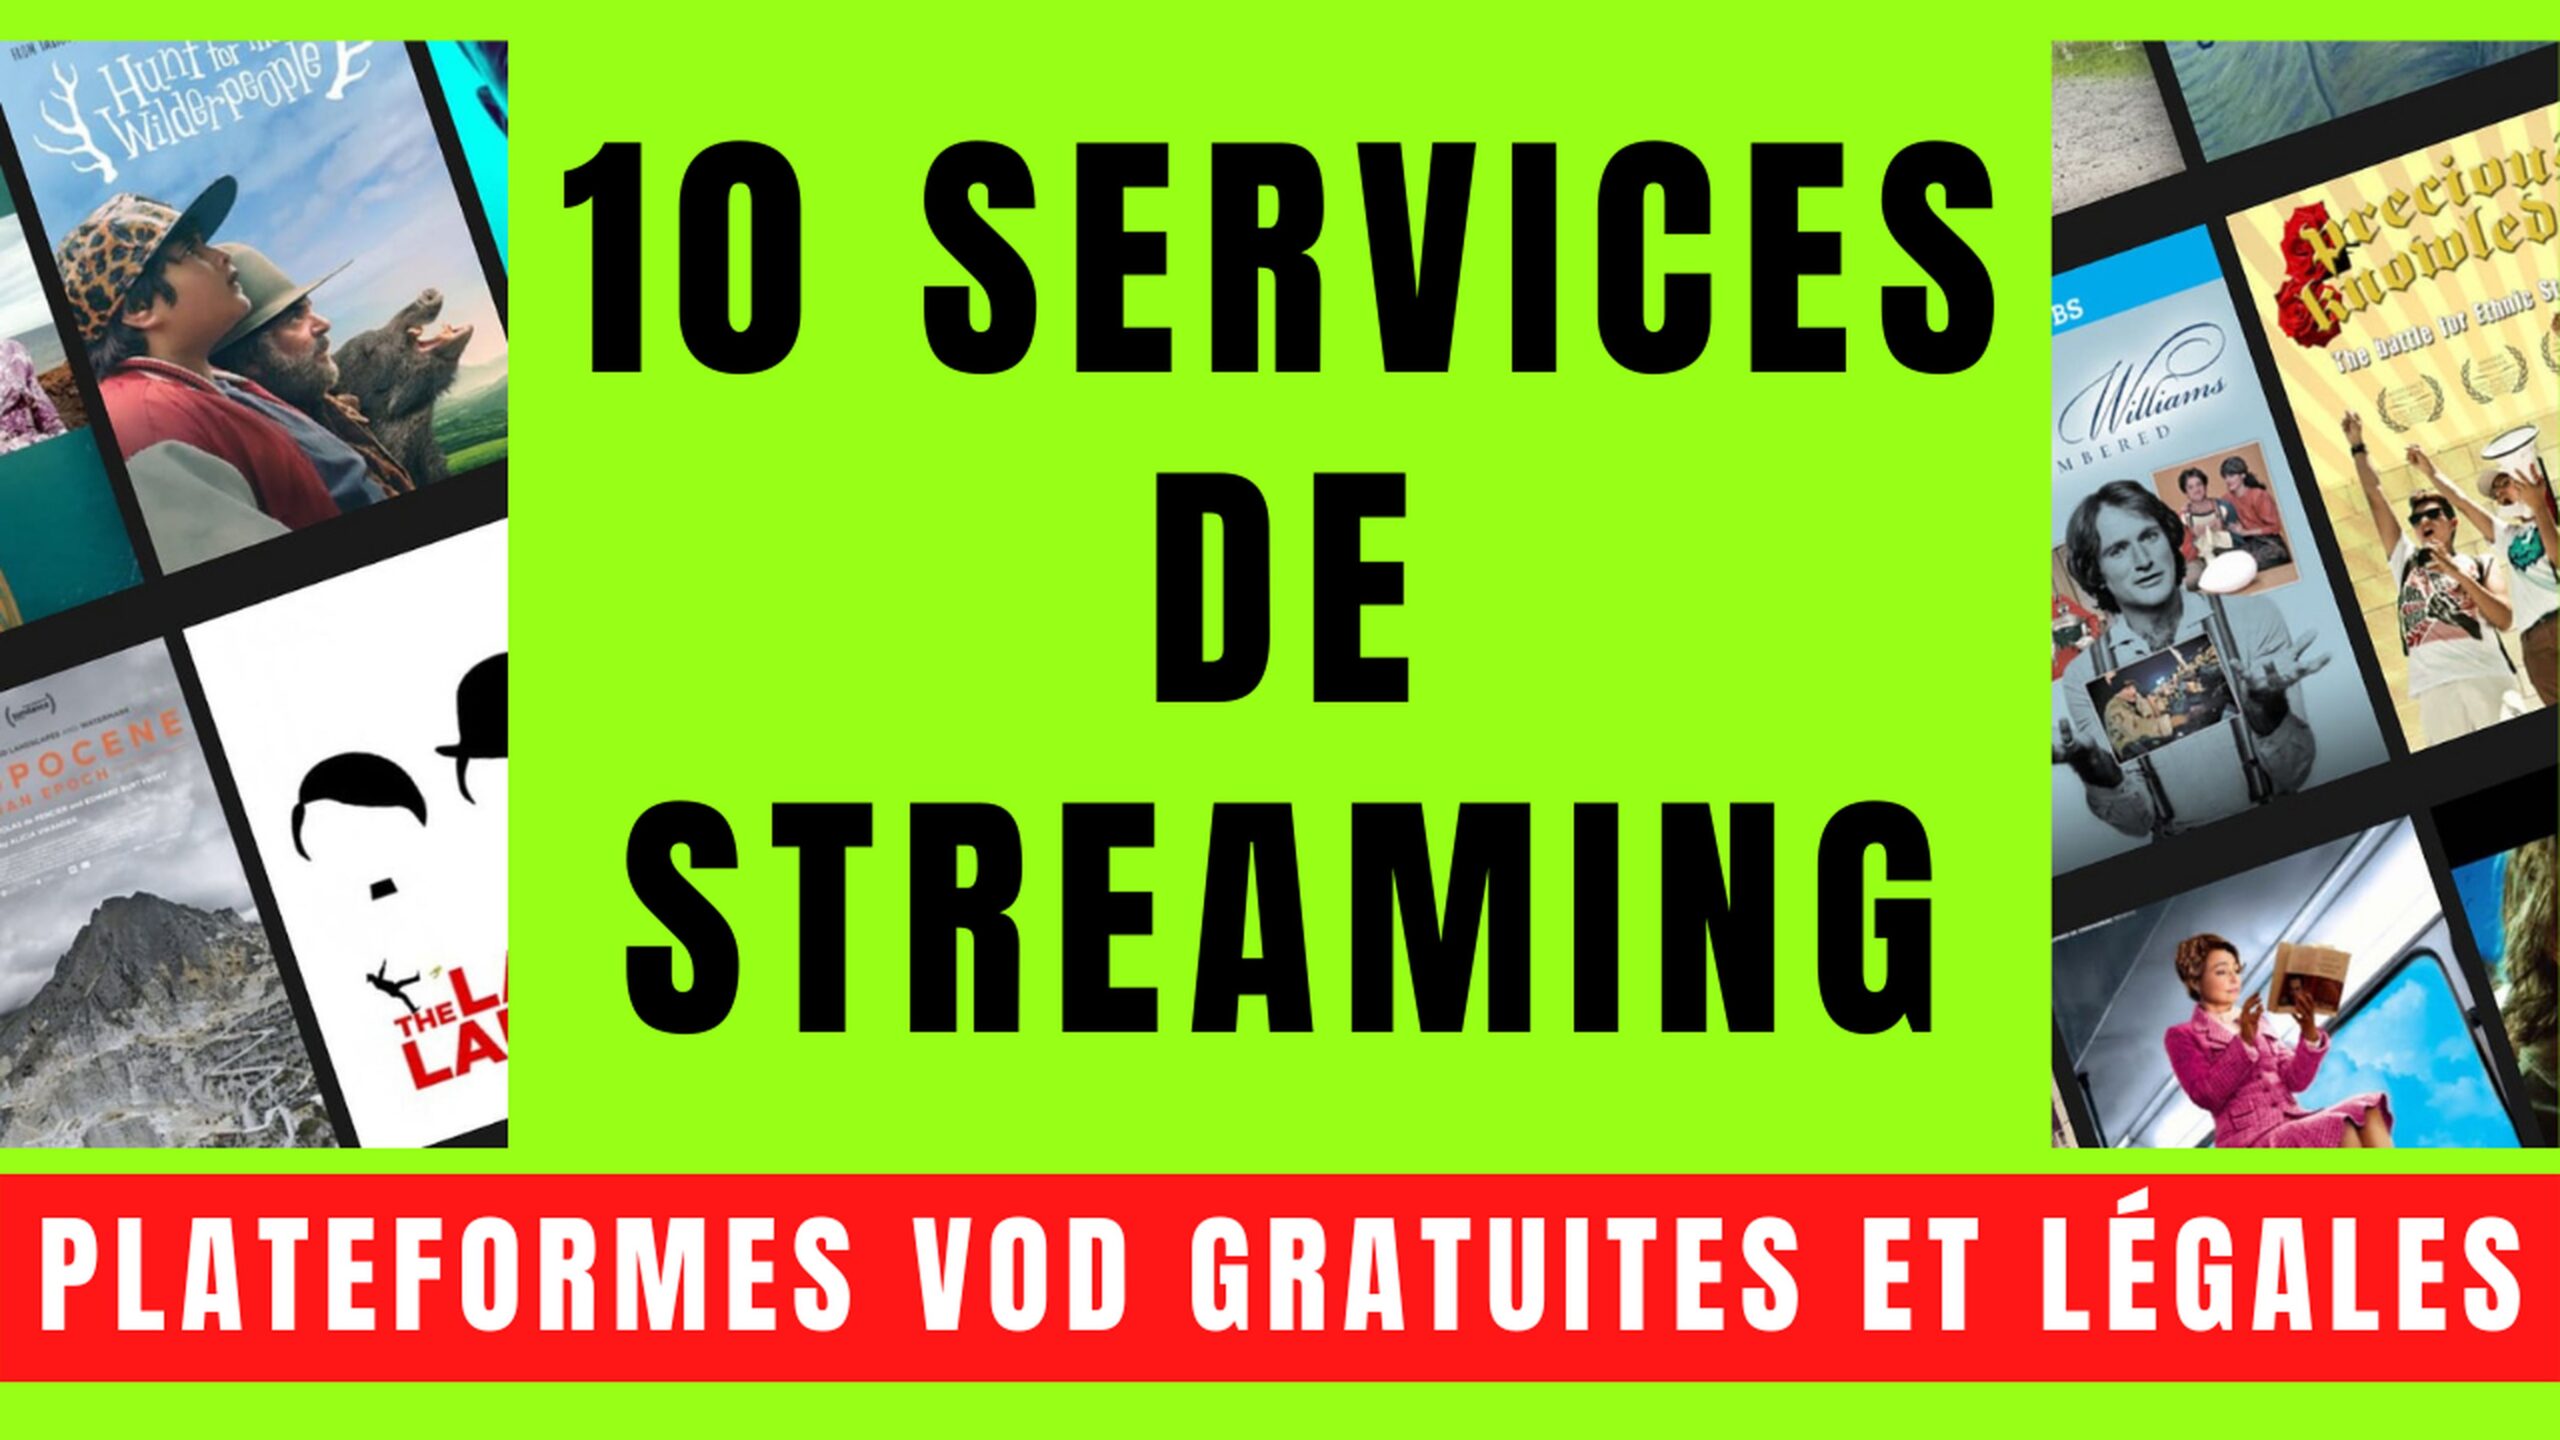 10 SERVICES VOD avec STREAMING GRATUIT et LÉGAL 67